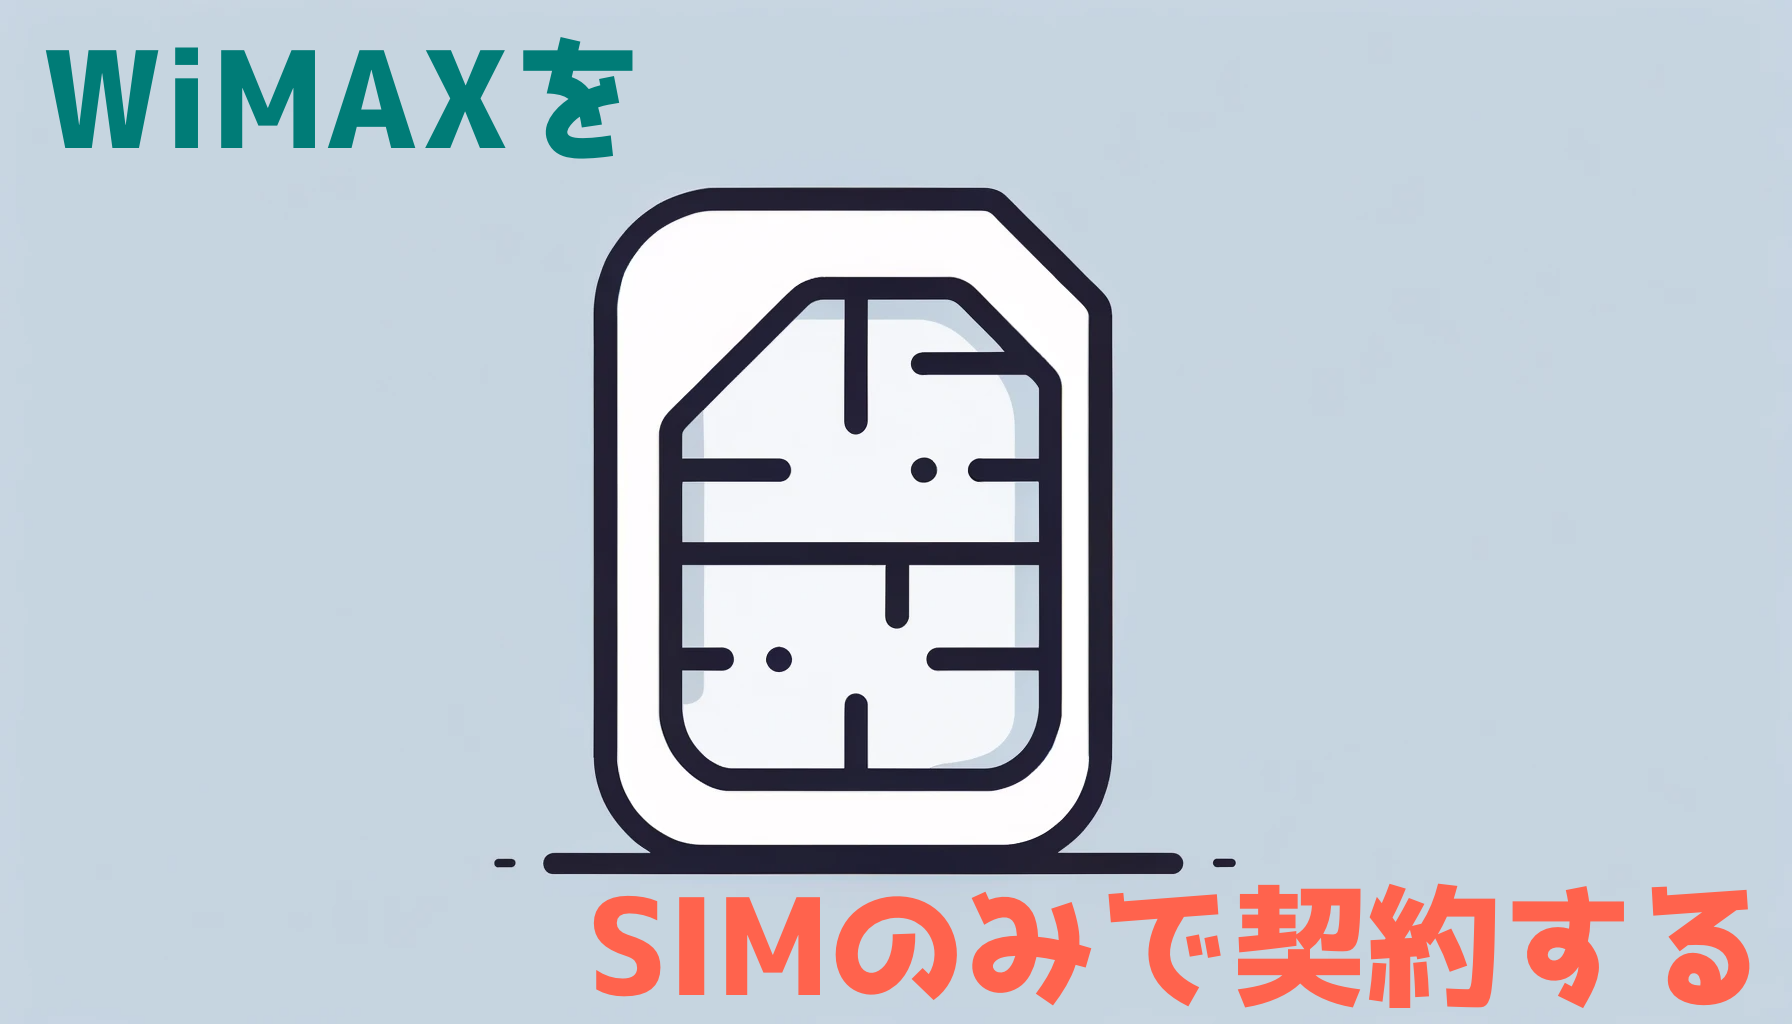 SIMのみで安く契約できるおすすめのWiMAXを徹底的にまとめ